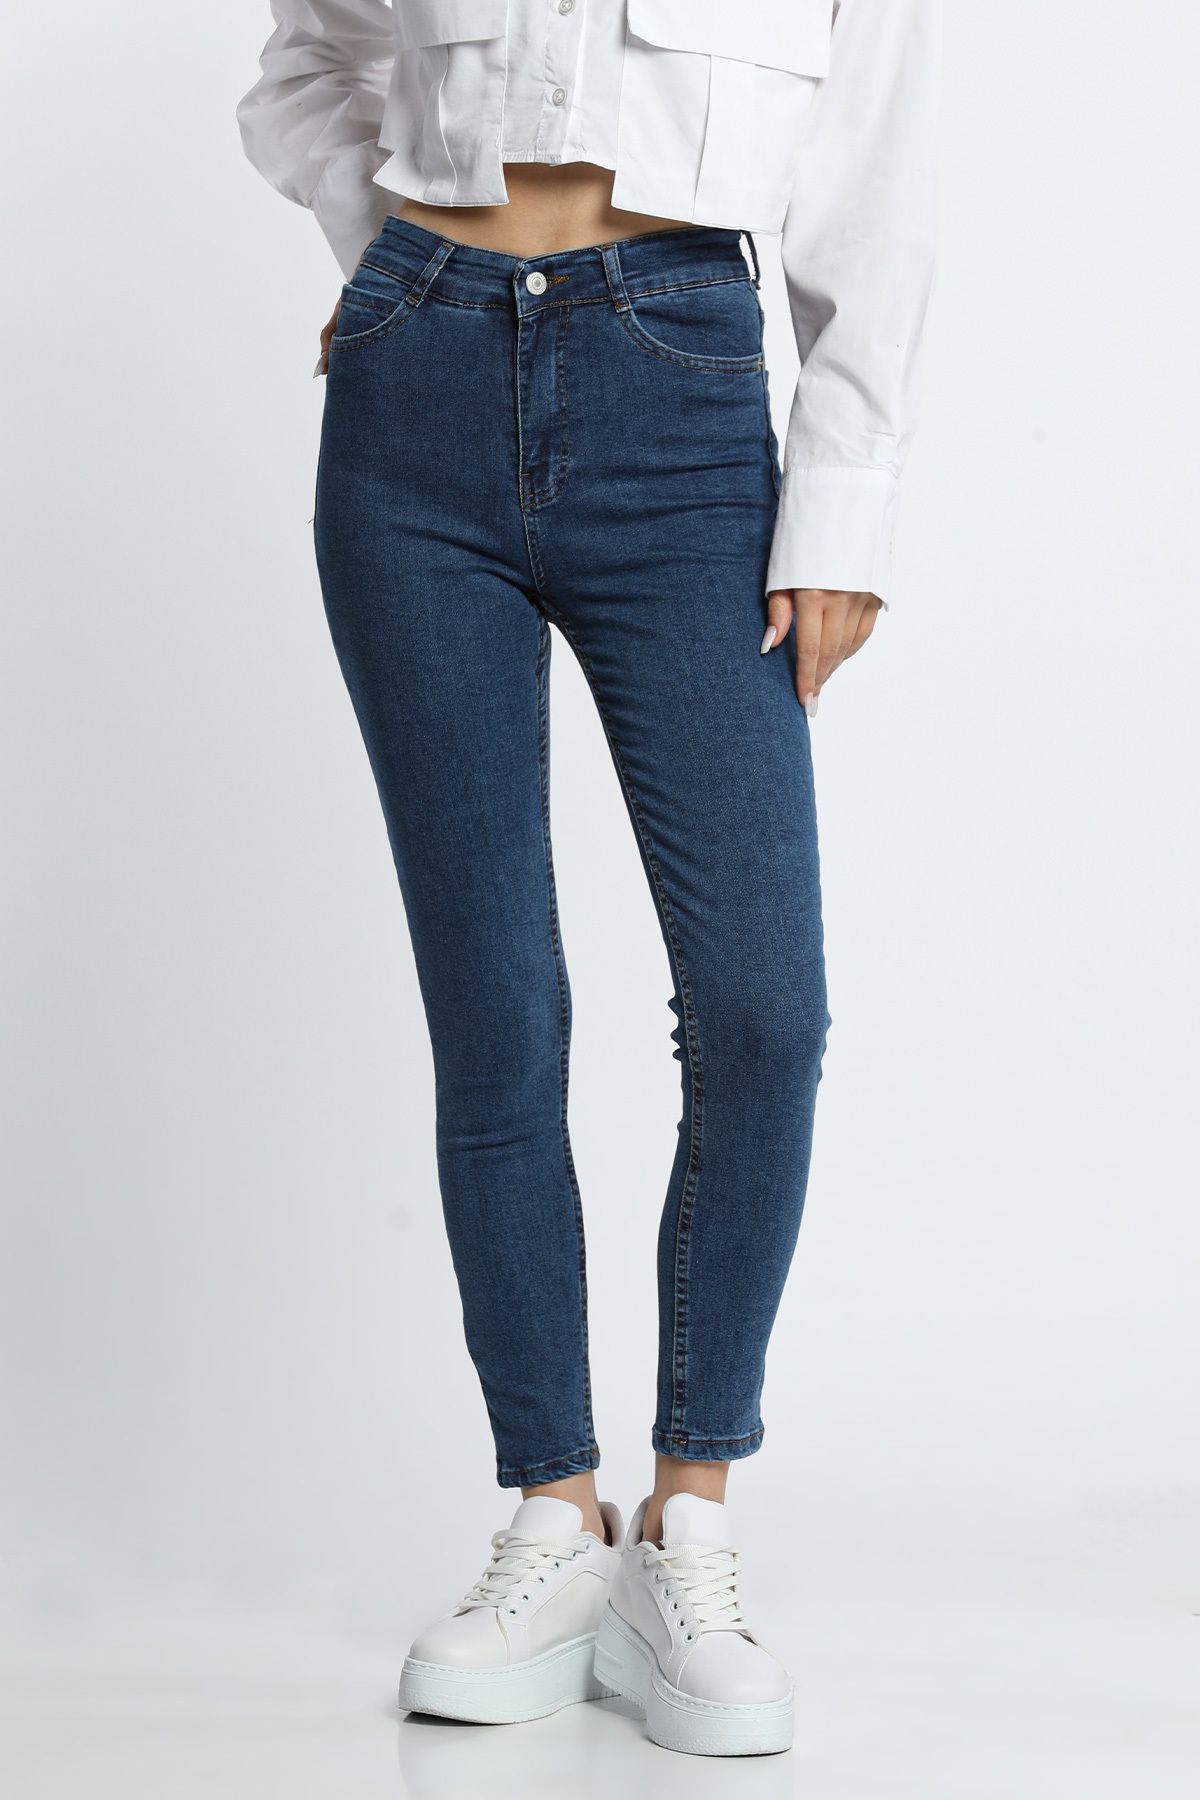 Julude Mavi Kadın Yüksek Bel Likralı Jeans Pantolon